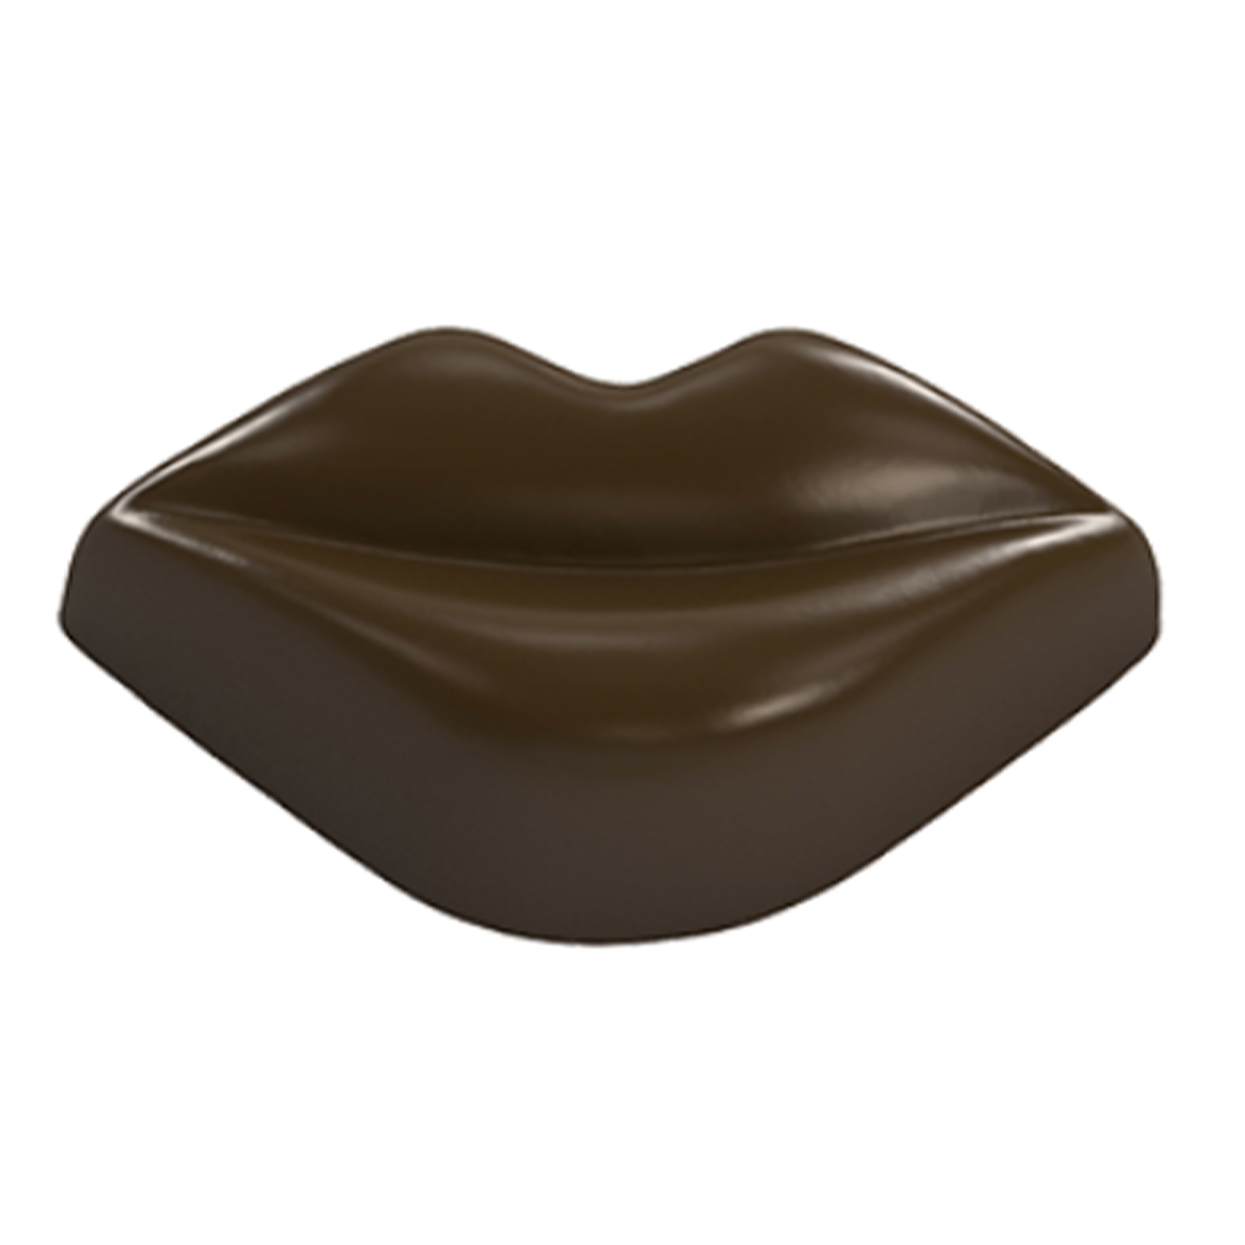 Форма для шоколада «Губы» №125 поликарбонатная, 21 ячейка, Implast, Турция  | Фото — Магазин Andy Chef  1